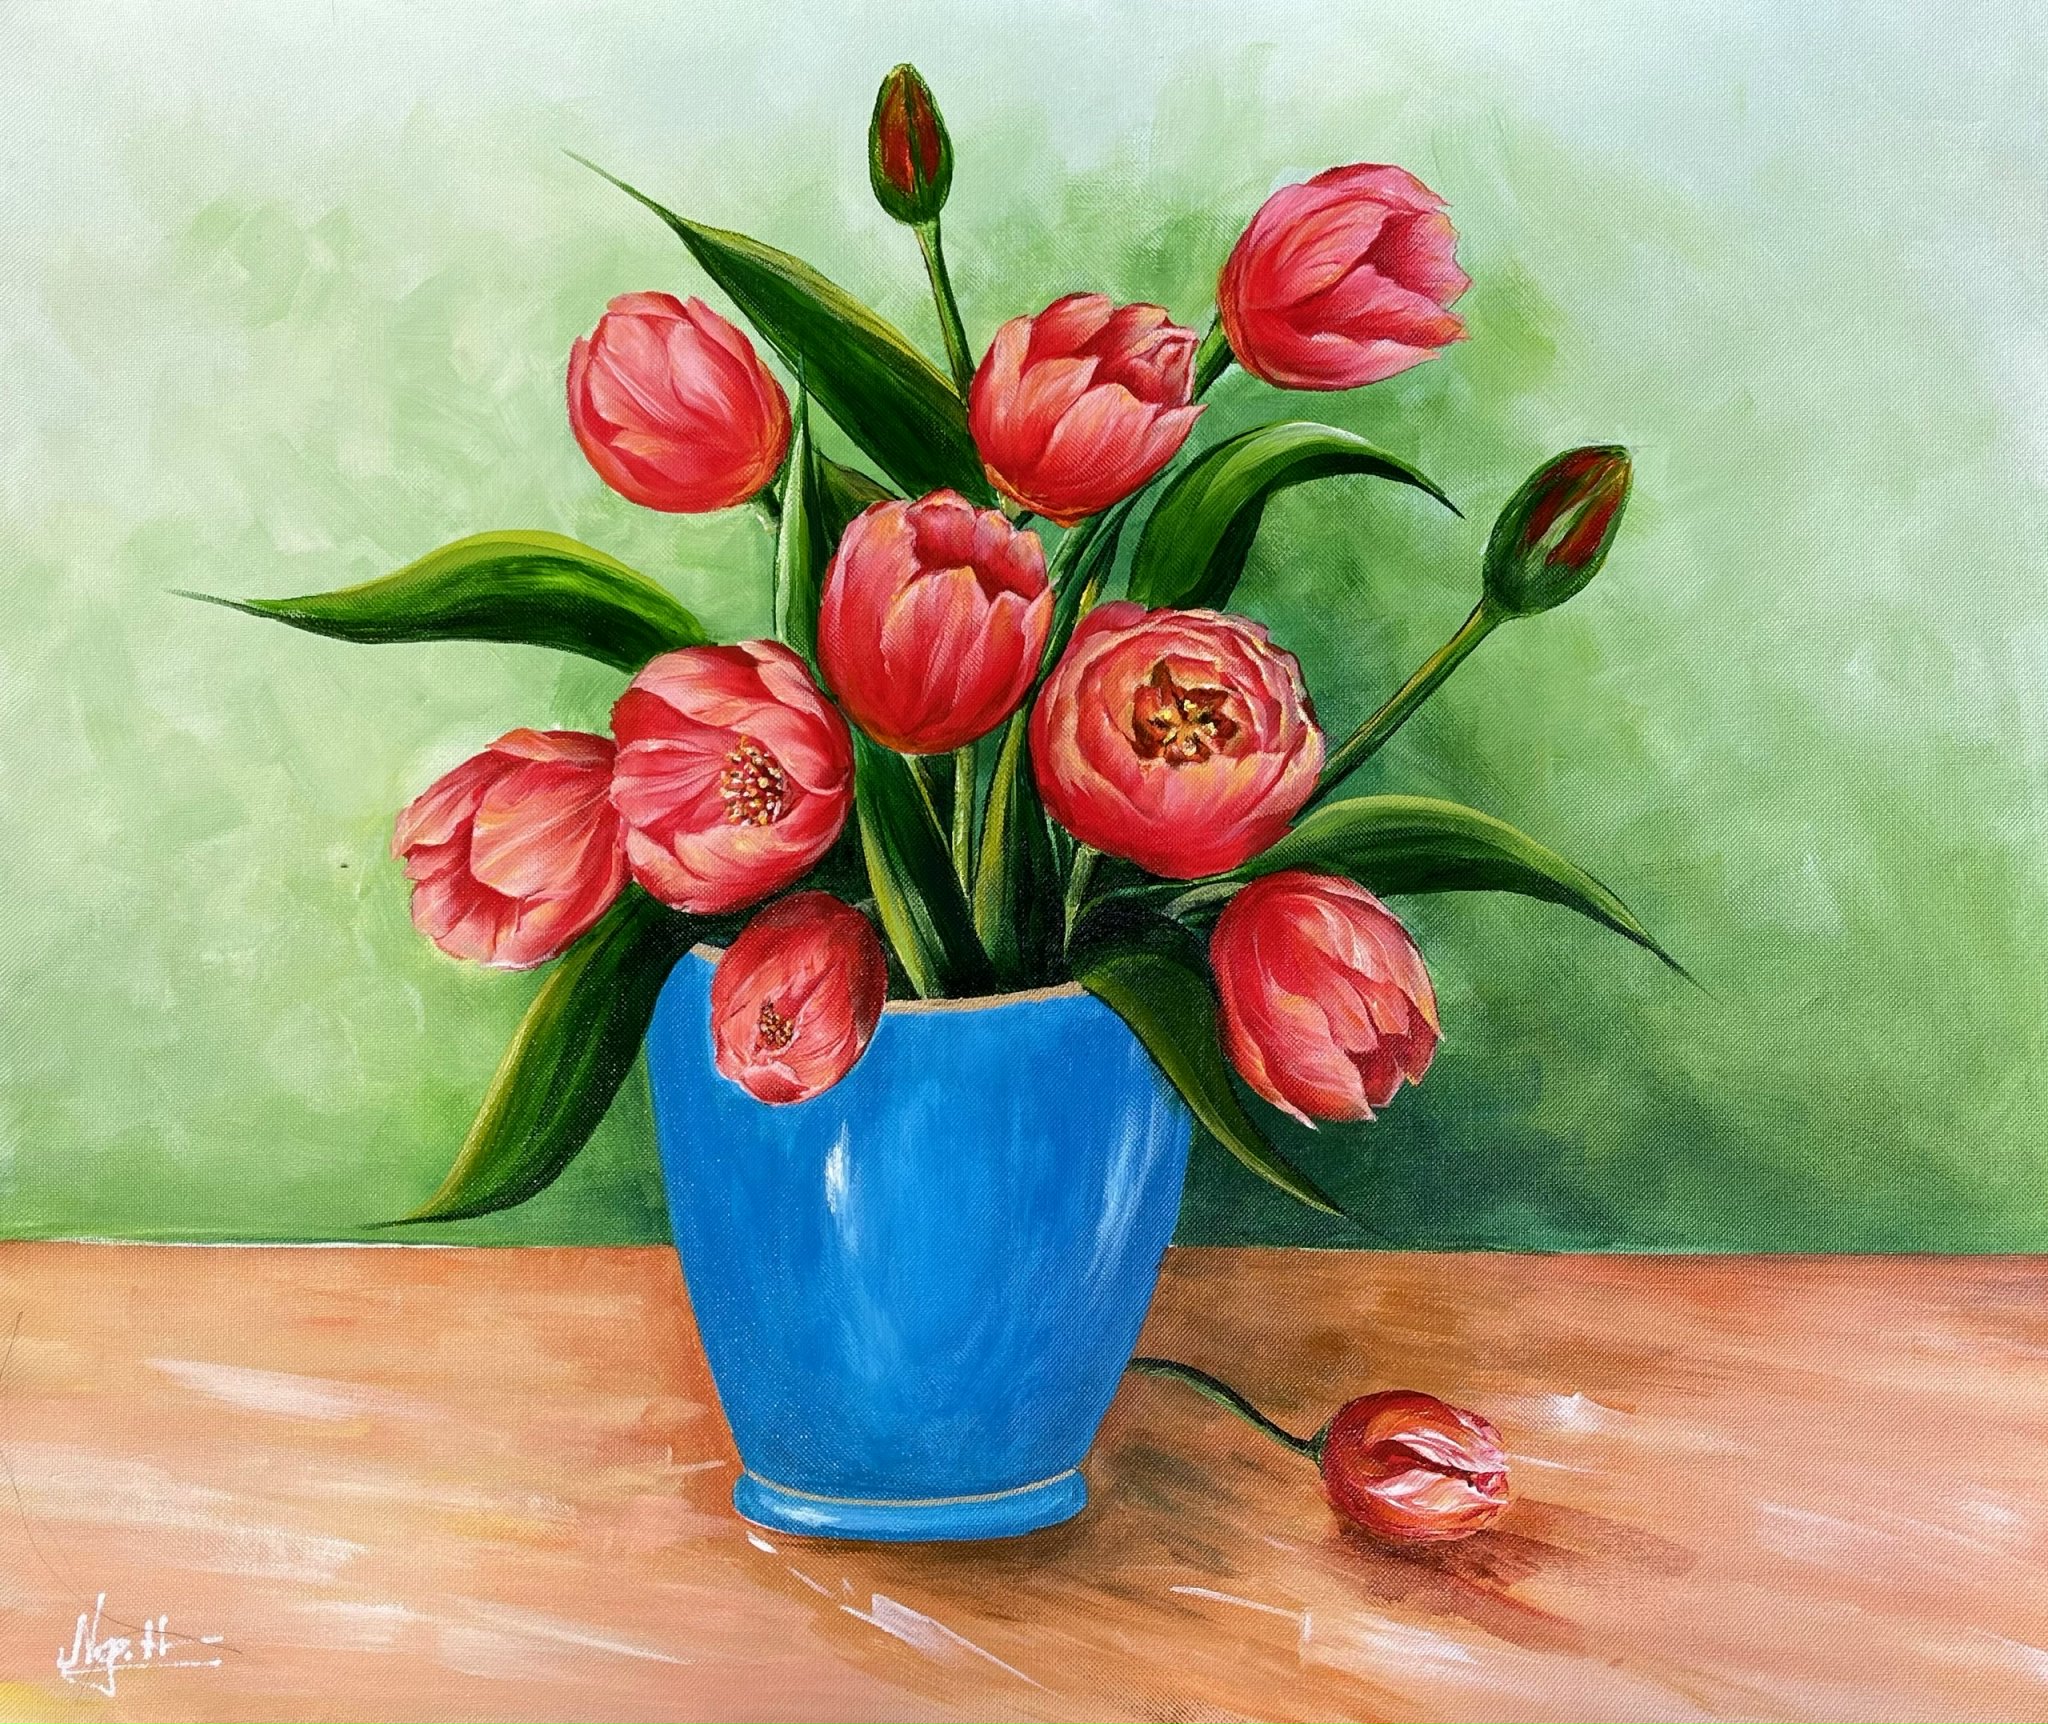 Bình hoa tulip là món quà tuyệt vời để bạn dành cho những người đặc biệt trong cuộc sống. Hãy ngắm nhìn những bức ảnh liên quan đến loài hoa đẹp này để cảm nhận sự tươi sáng và lãng mạn mà chúng mang lại.